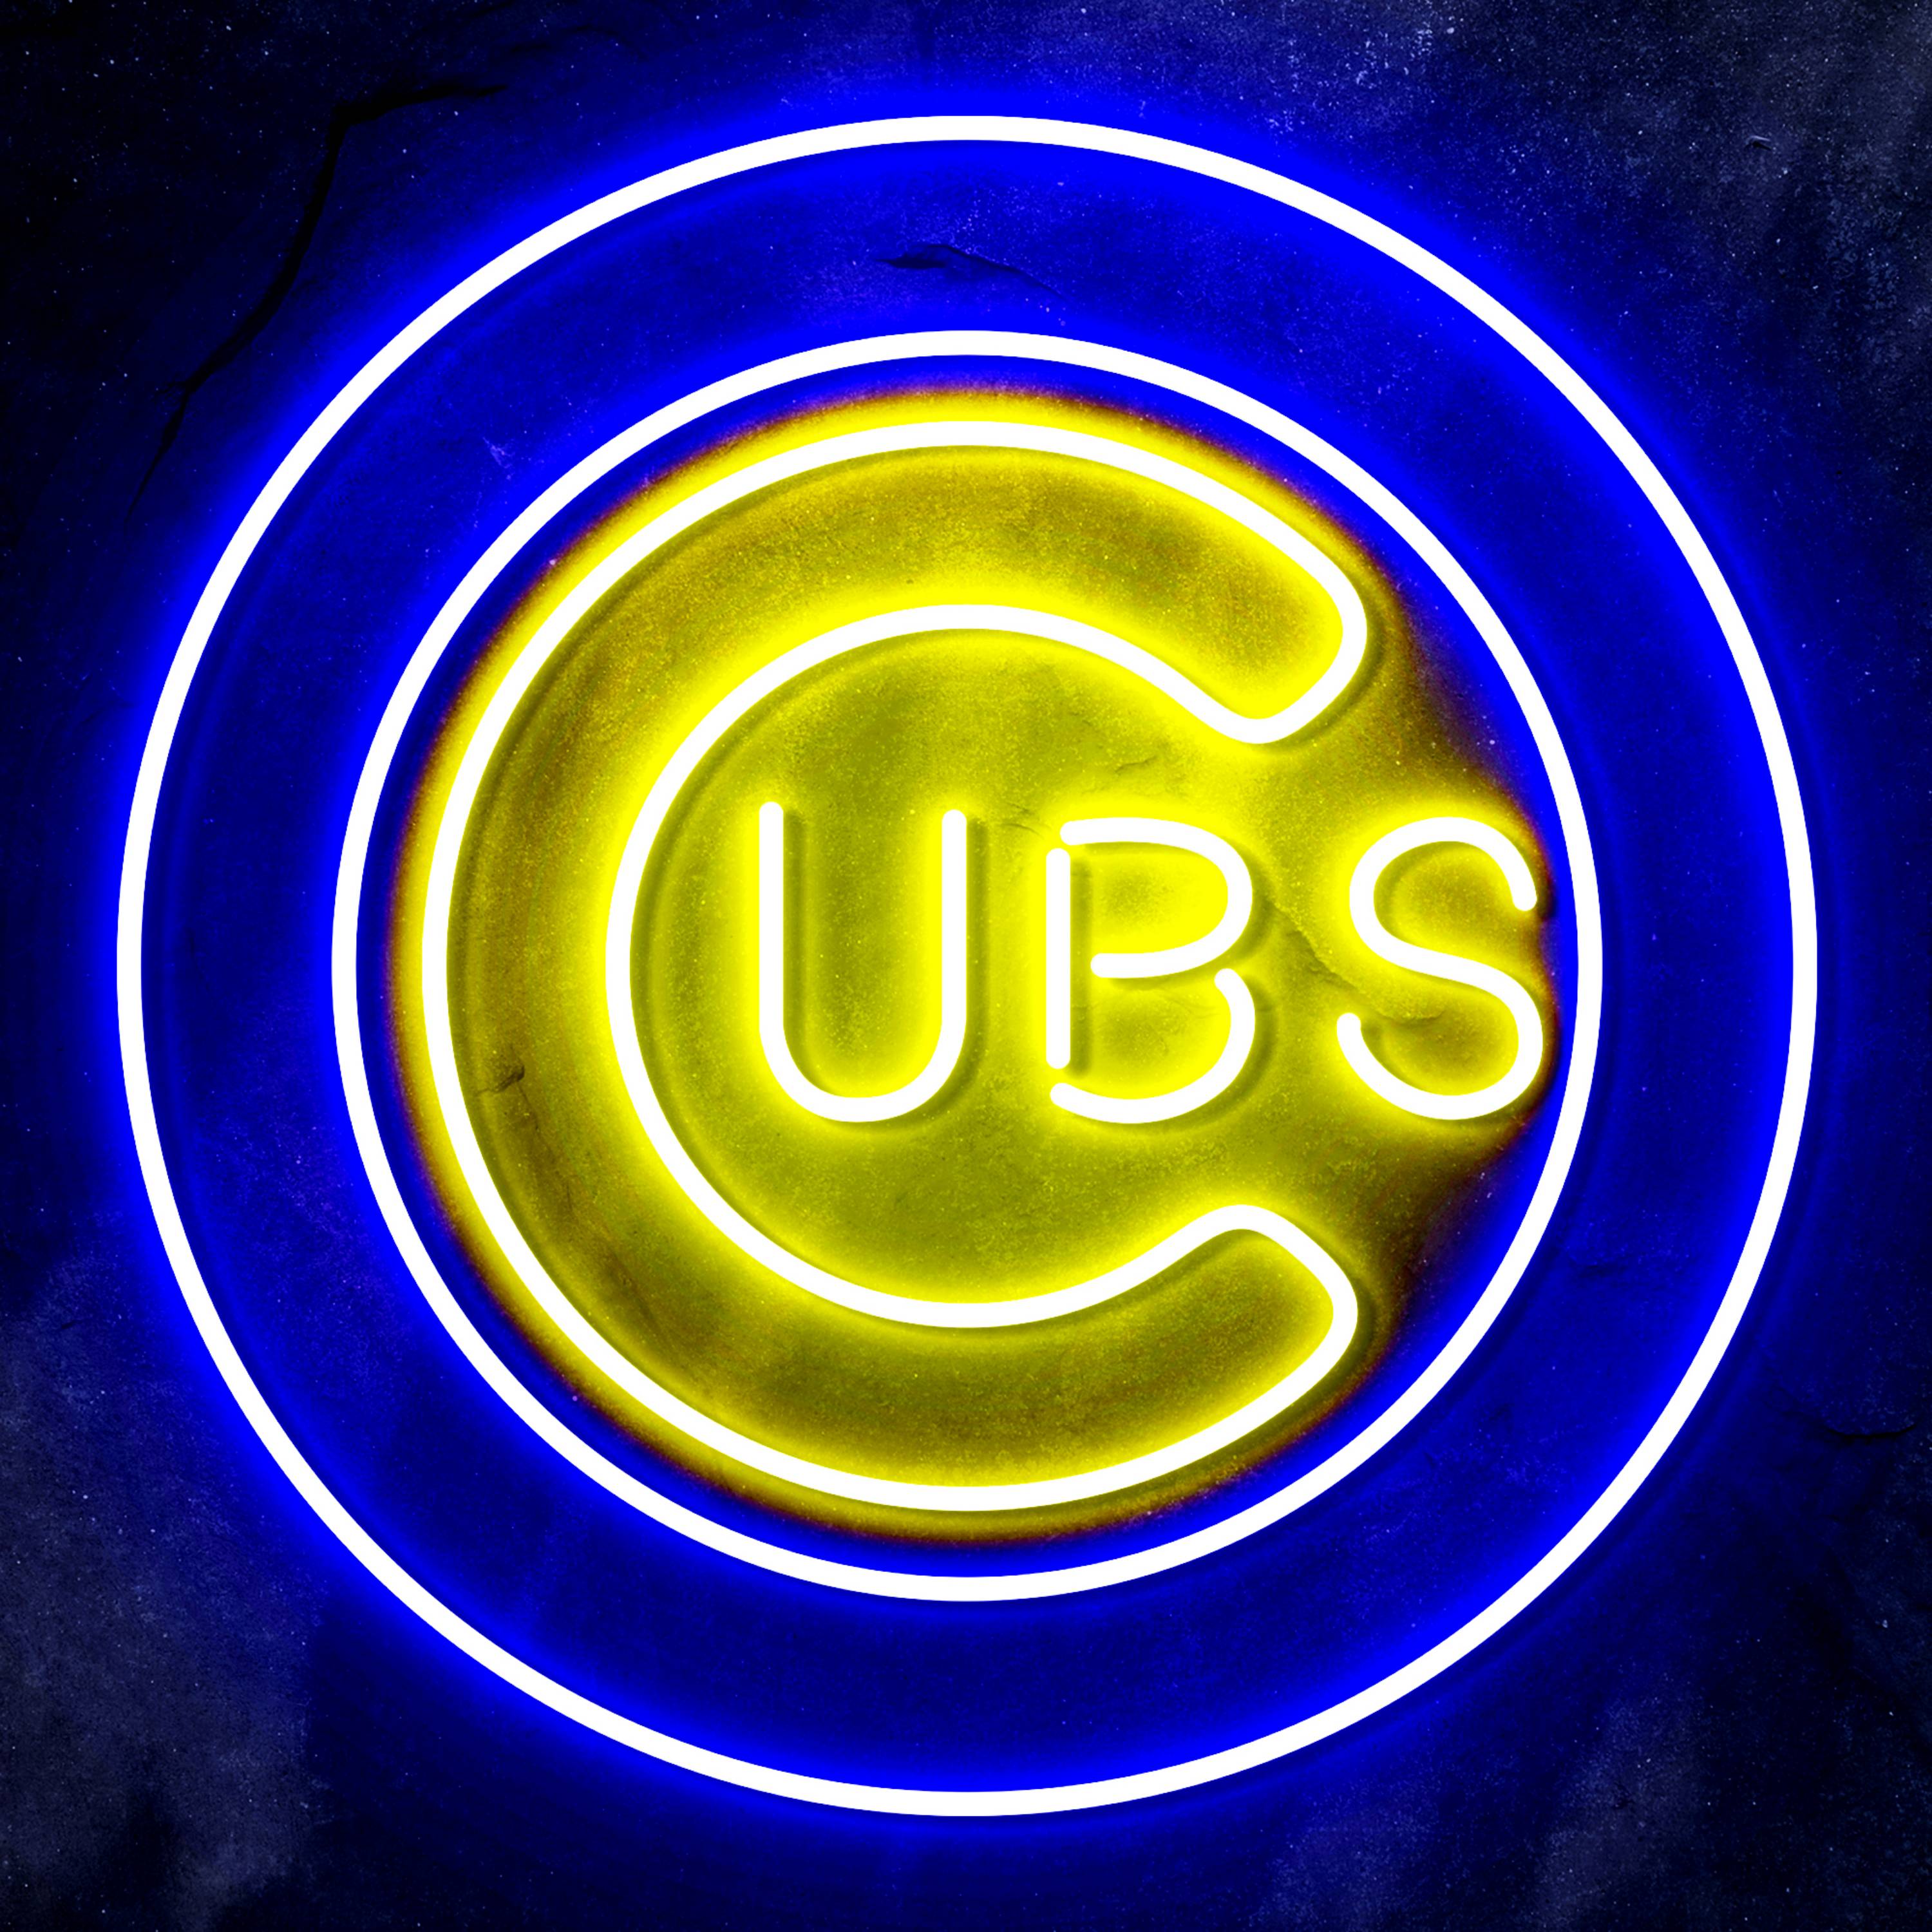 MLB Chicago Cubs Bar Neon Flex LED Sign